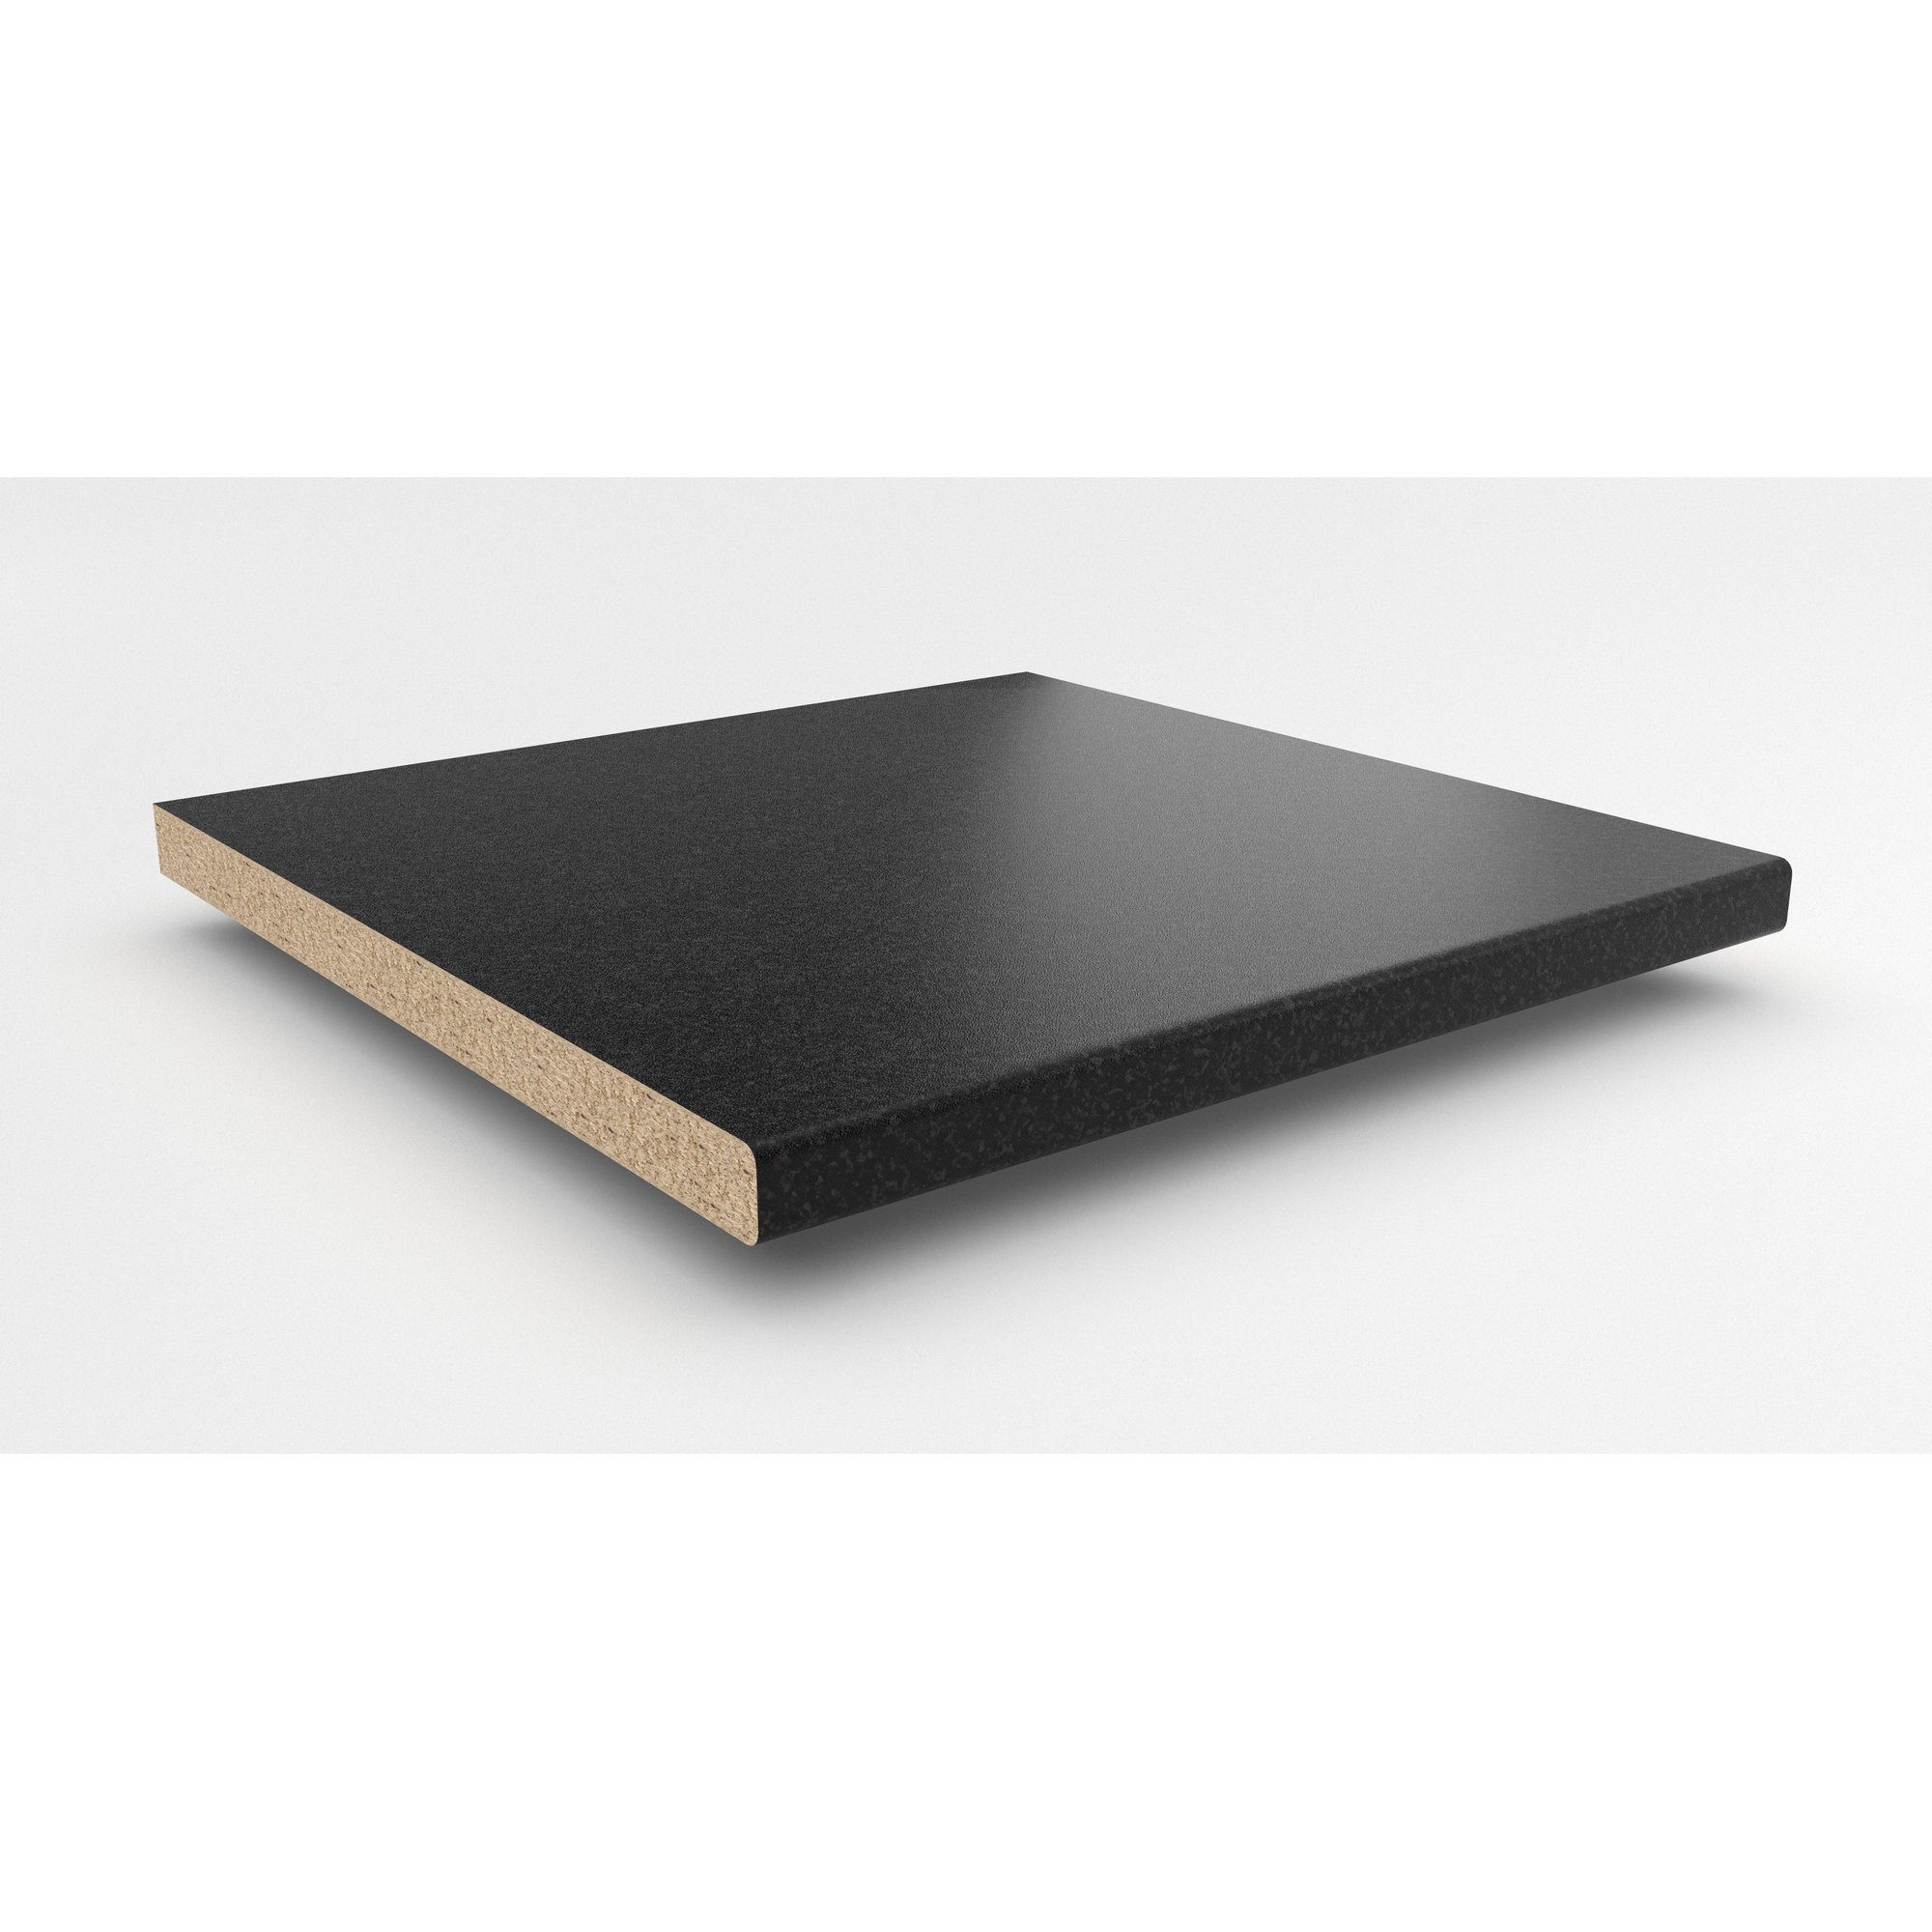 Küchenarbeitsplatte Spanplatte Granit Anthrazit 305 x 60 x 3,9 cm + product picture